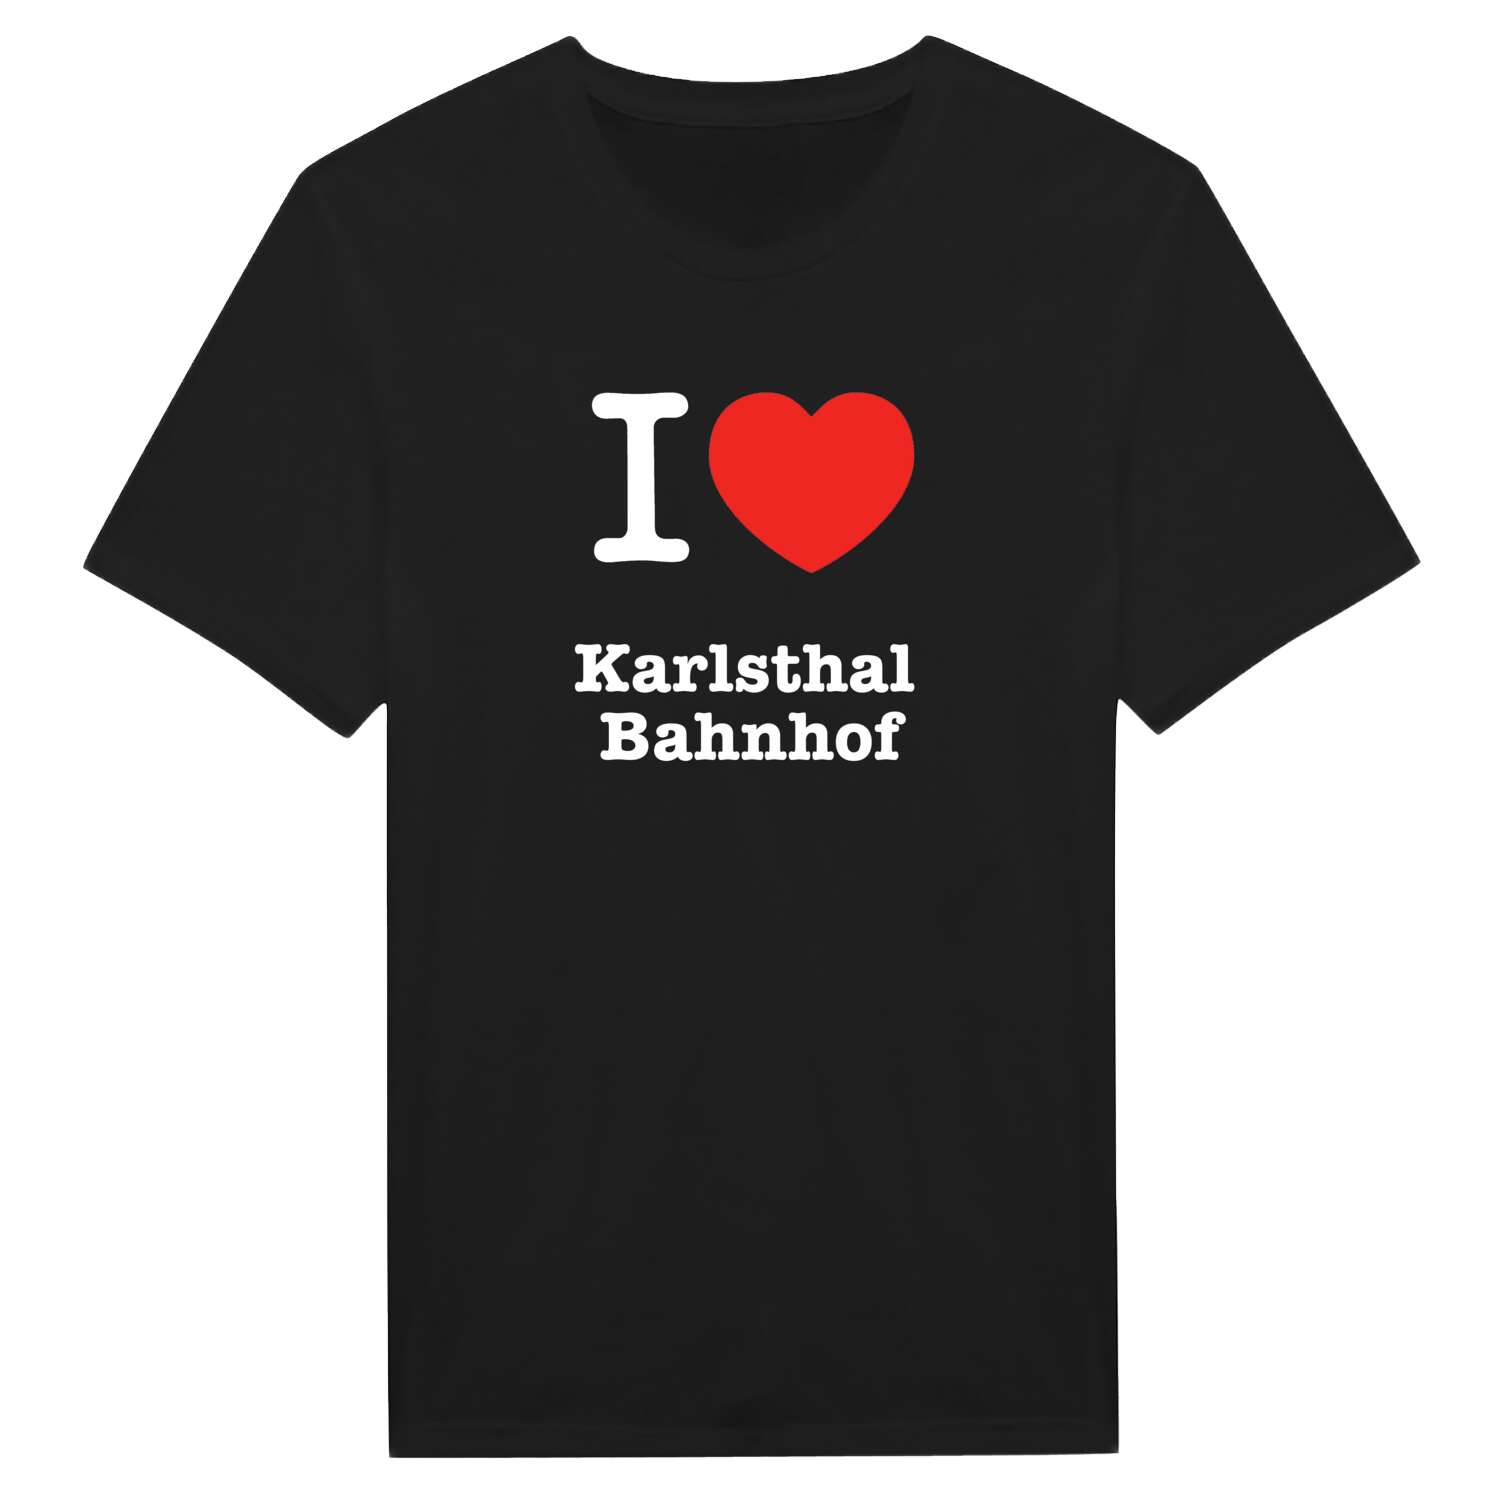 Karlsthal Bahnhof T-Shirt »I love«